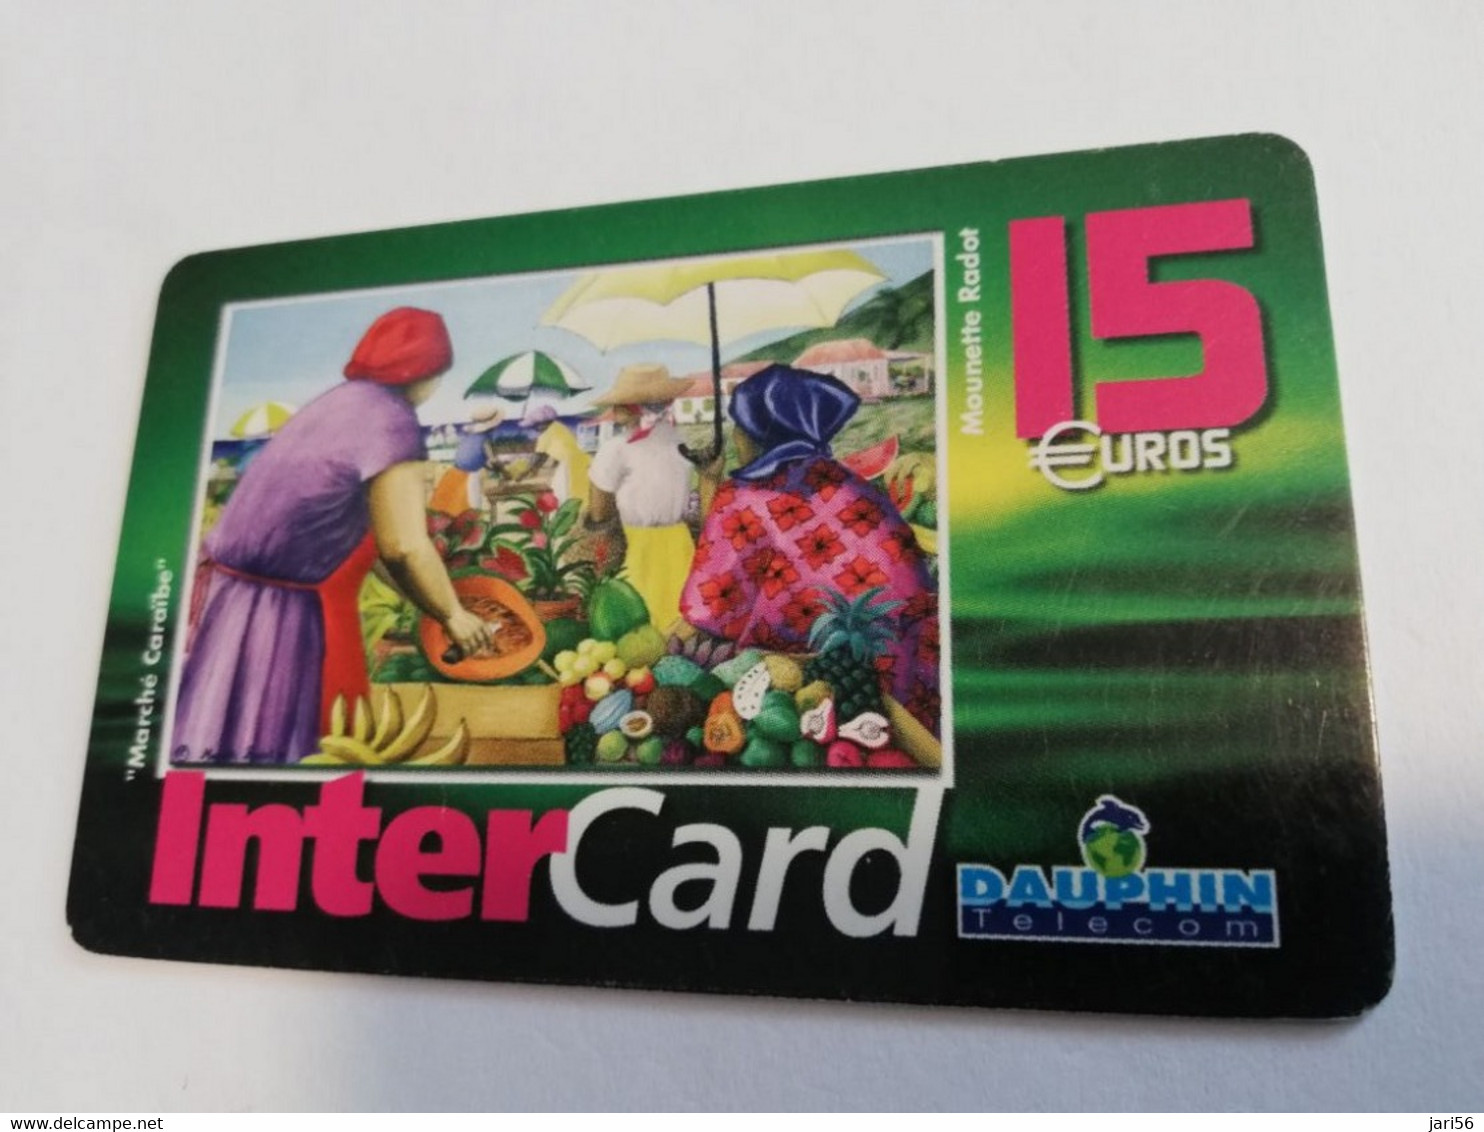 ST MARTIN / INTERCARD  15 EURO  MARCHE CARAIBE   NO 053   Fine Used Card    ** 6561 ** - Antillen (Französische)